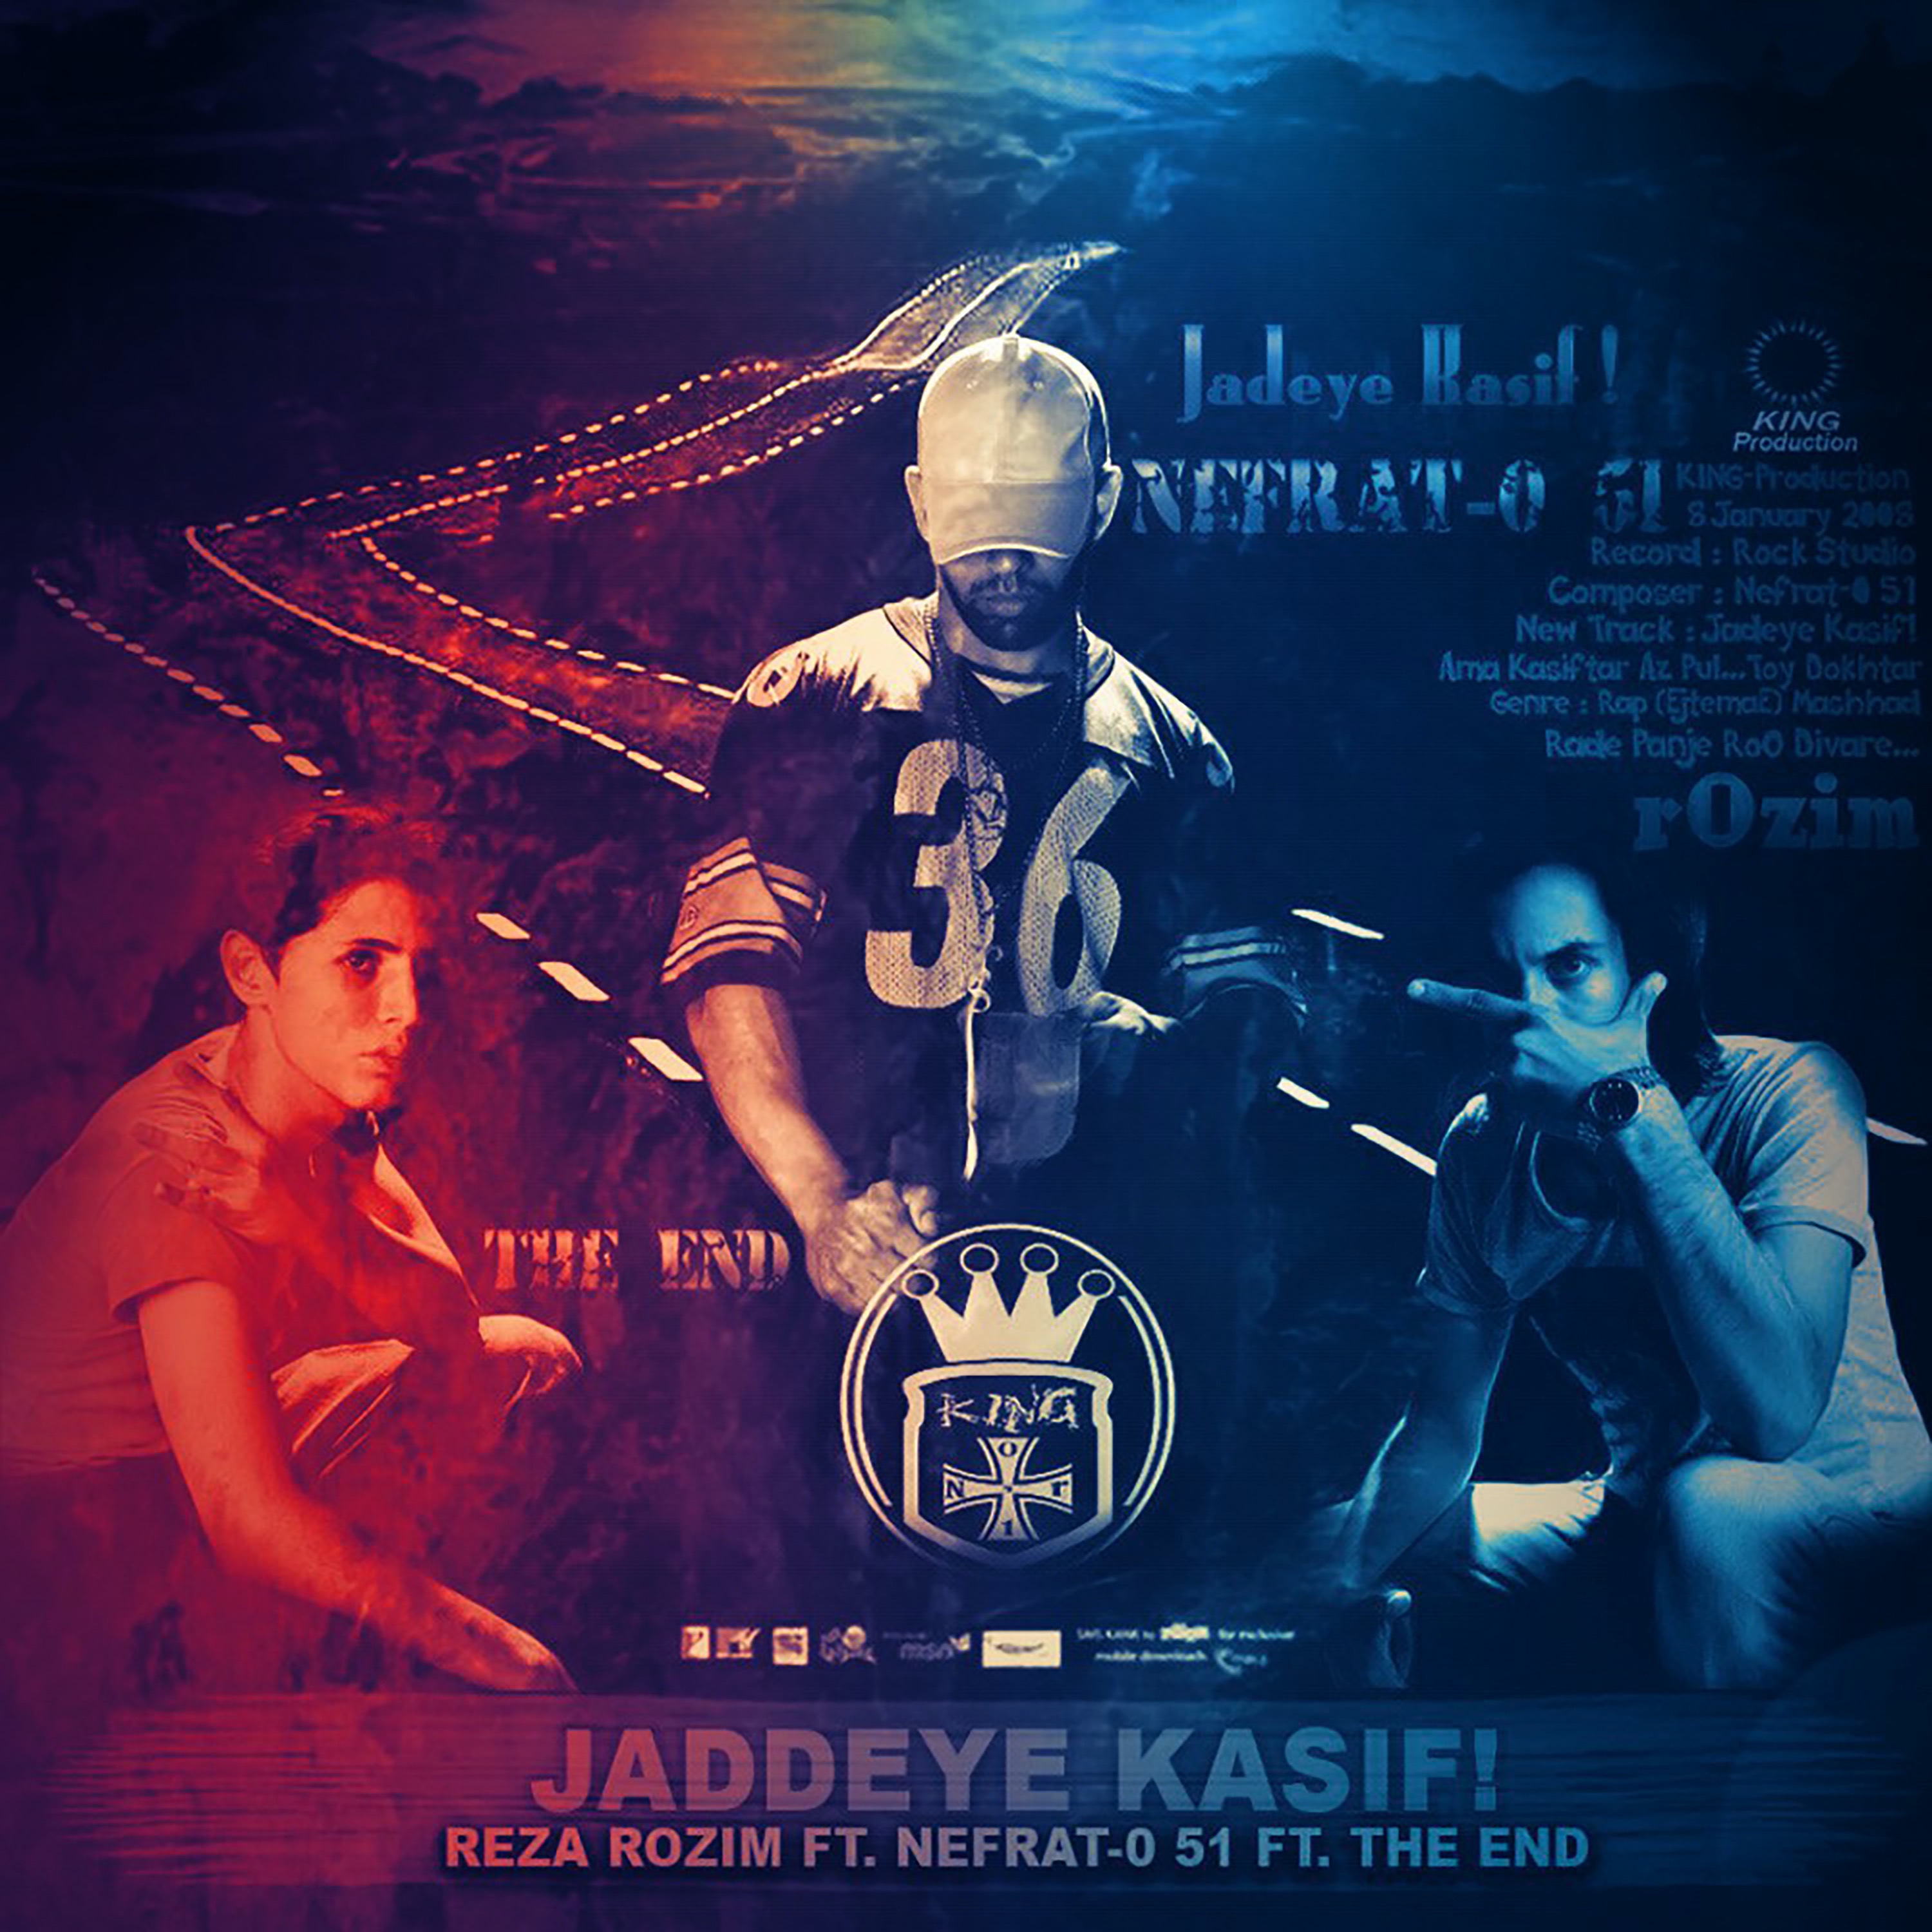  دانلود آهنگ جدید رُظیم - جاده کثیف | Download New Music By Reza Rozim - Jaddeye Kasif (feat. Nefrat 051 & The End)